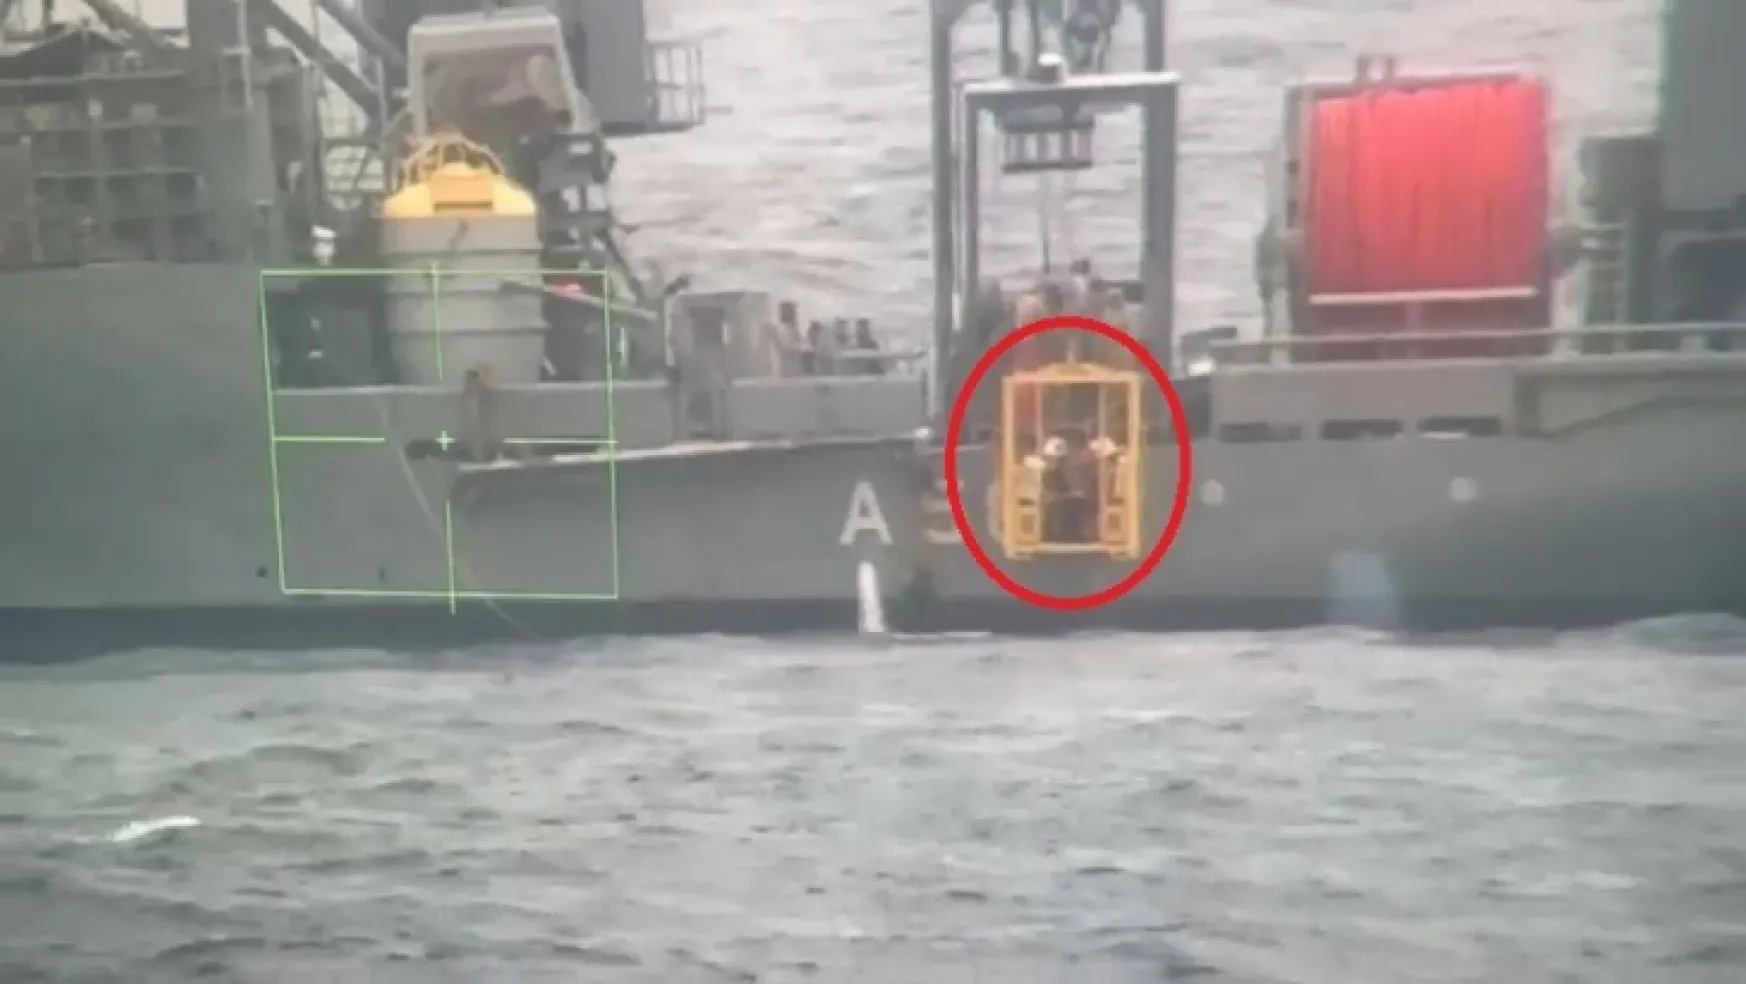 Batan gemide kaybolan 6 kişiden 1'inin cansız bedenine ulaşıldı